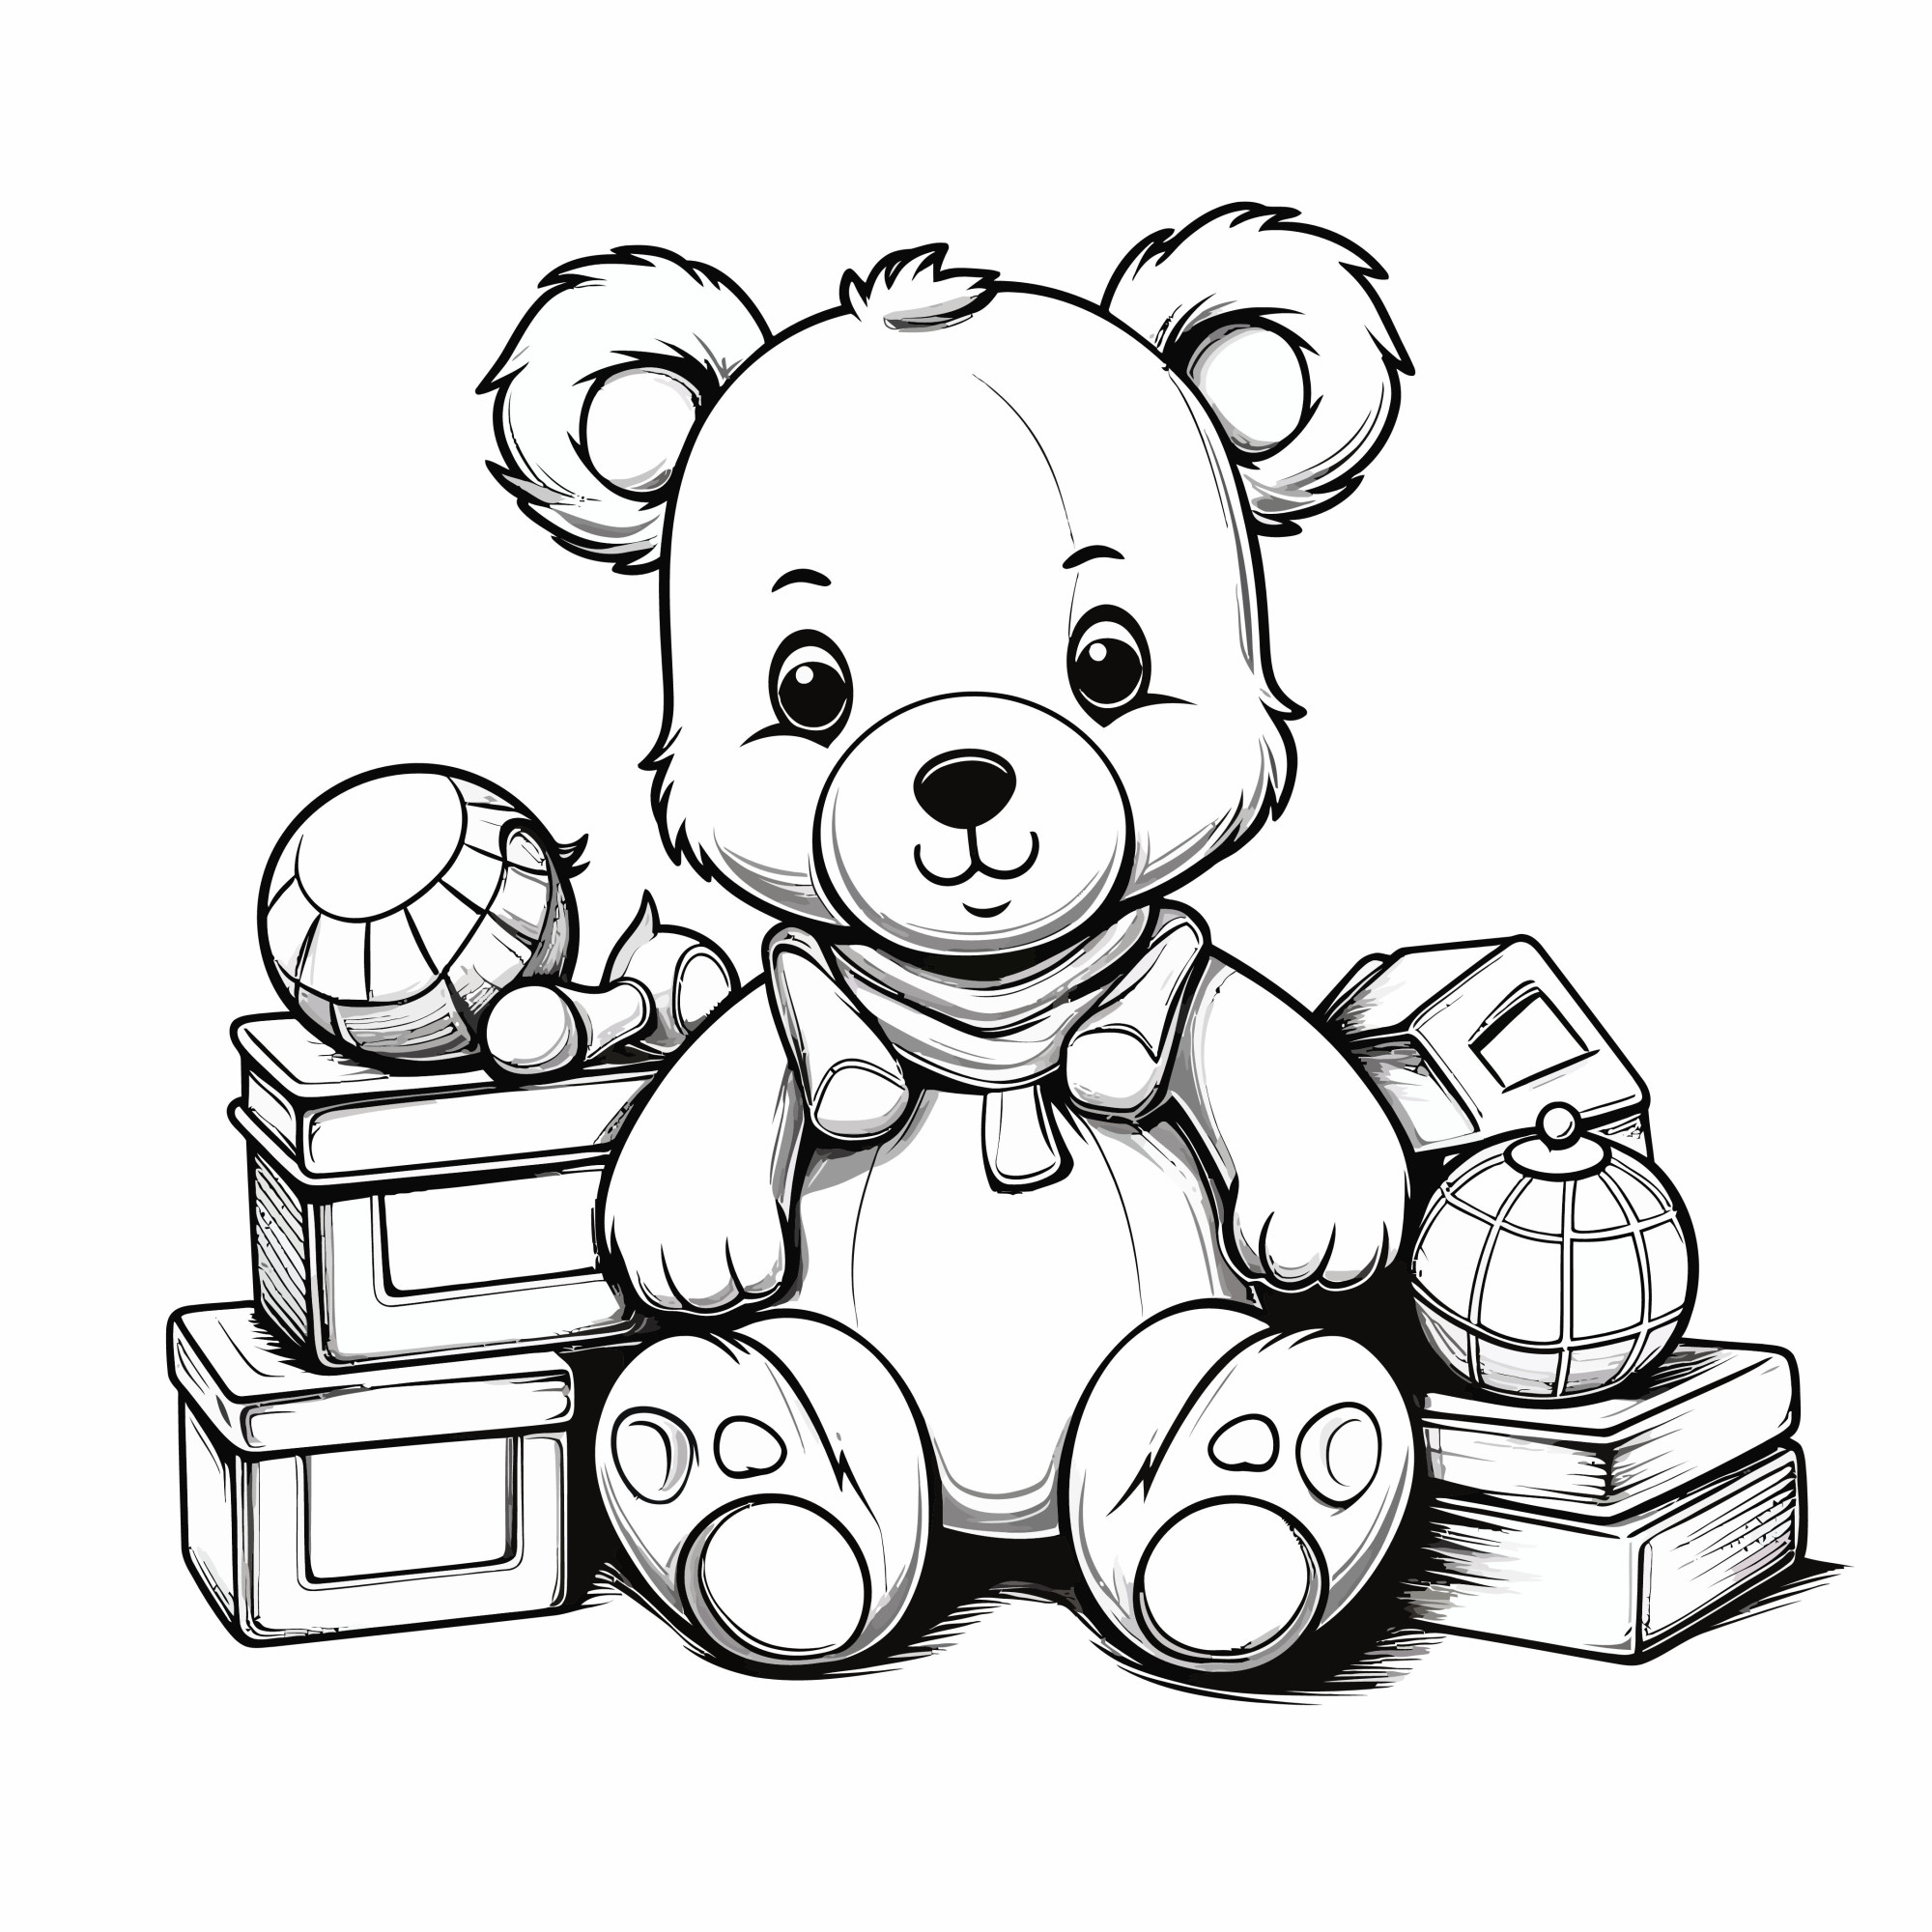 Раскраска для детей: кукла медведь сидит в детских игрушках